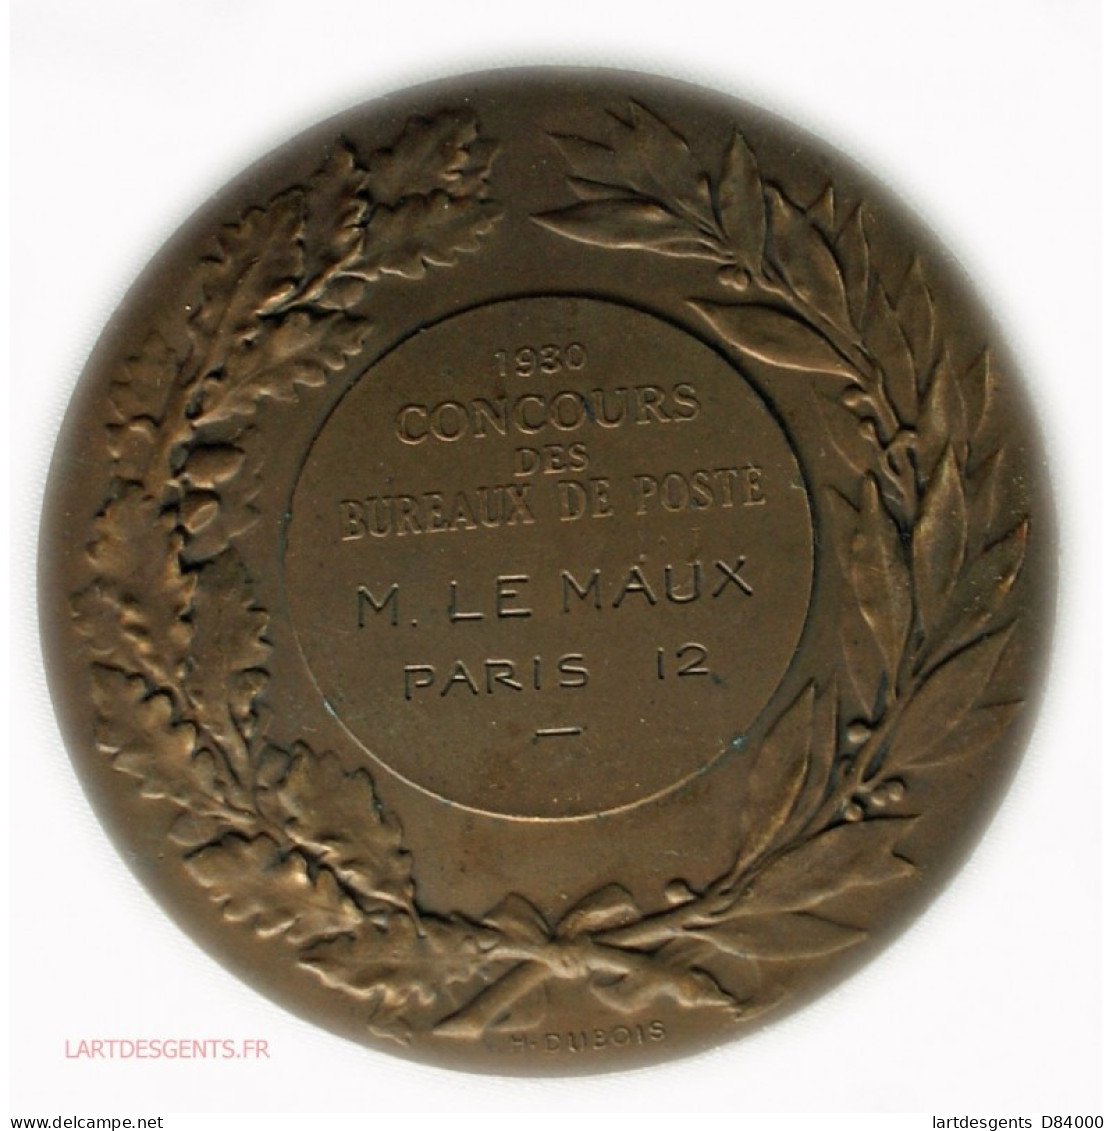 Rare Médaille Concours Des Bureaux De Poste Paris 12 Par Daniel DUPUIS - Royaux / De Noblesse